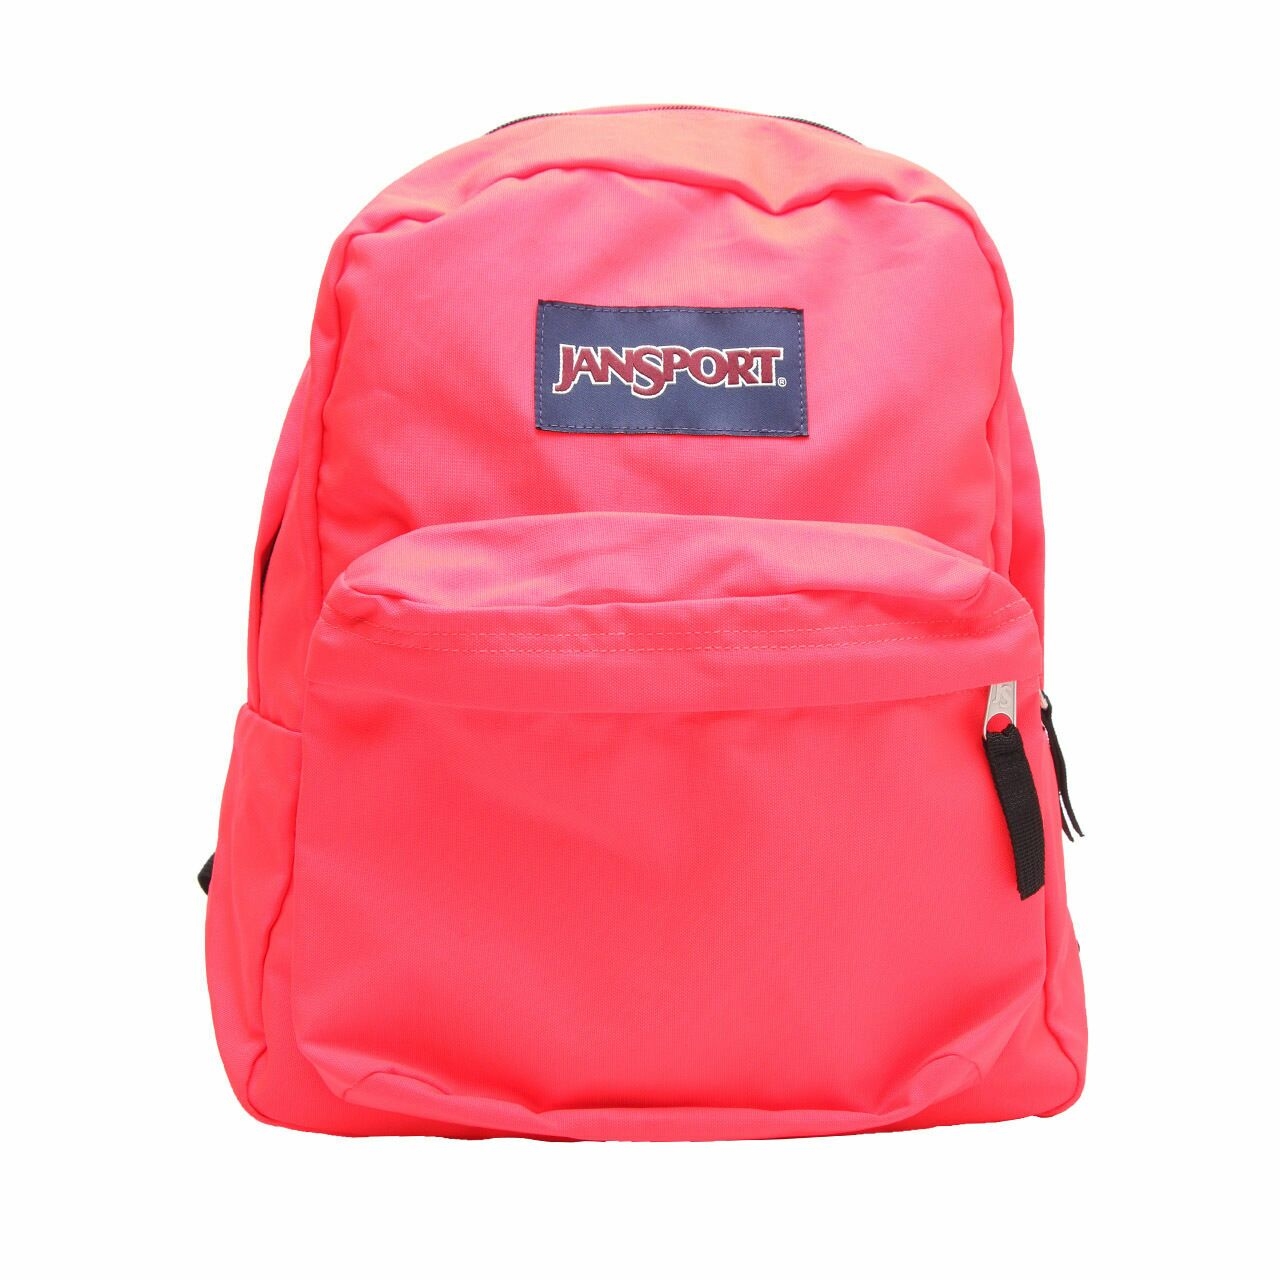 Jansport Pink Coral Backpack